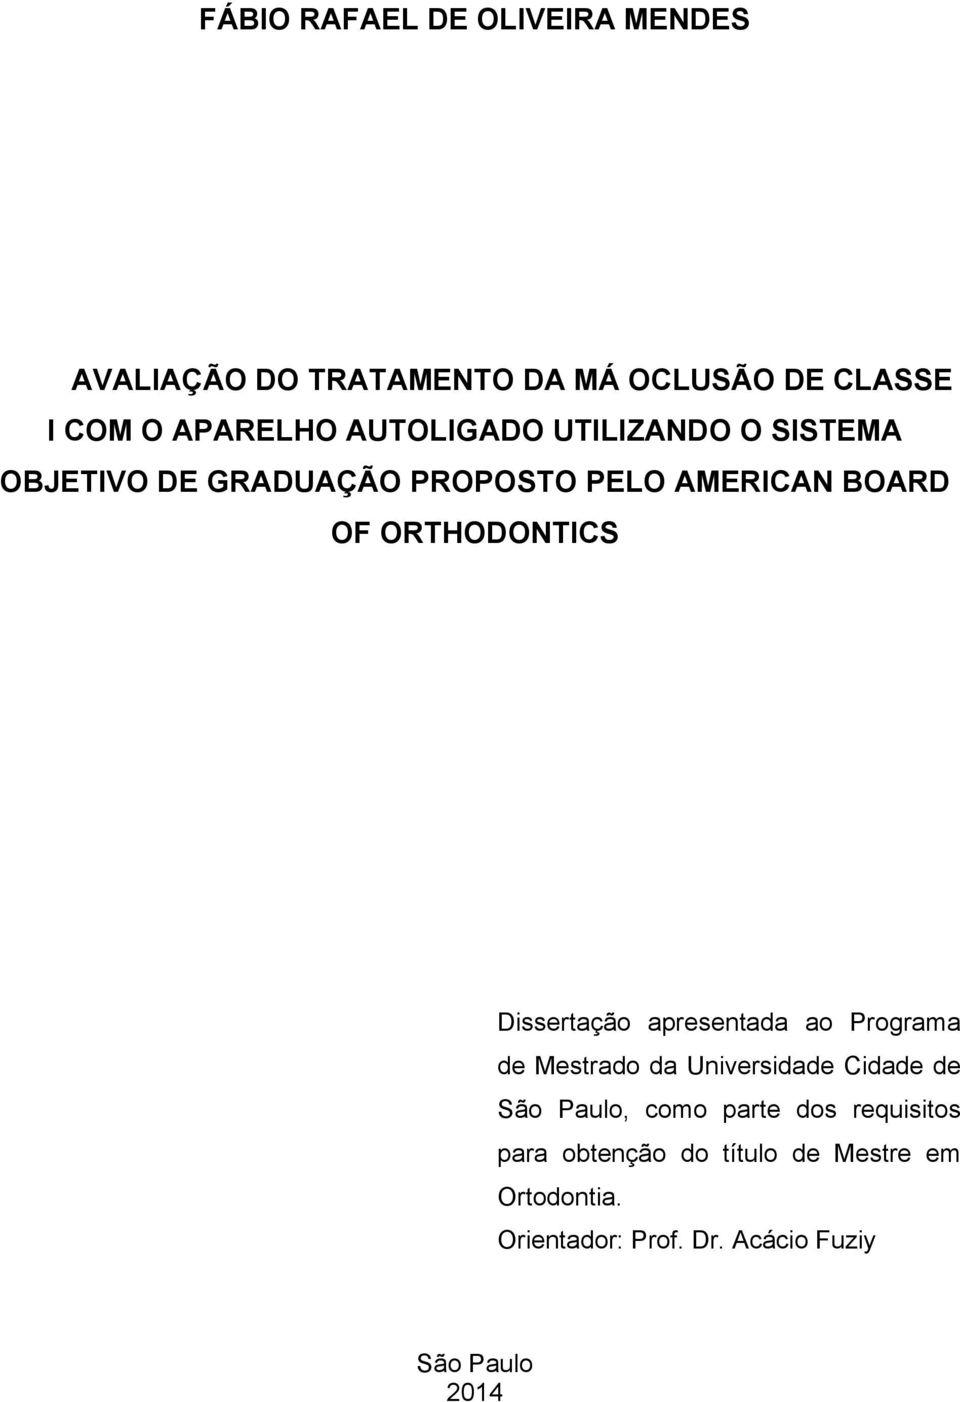 Dissertação apresentada ao Programa de Mestrado da Universidade Cidade de São Paulo, como parte dos